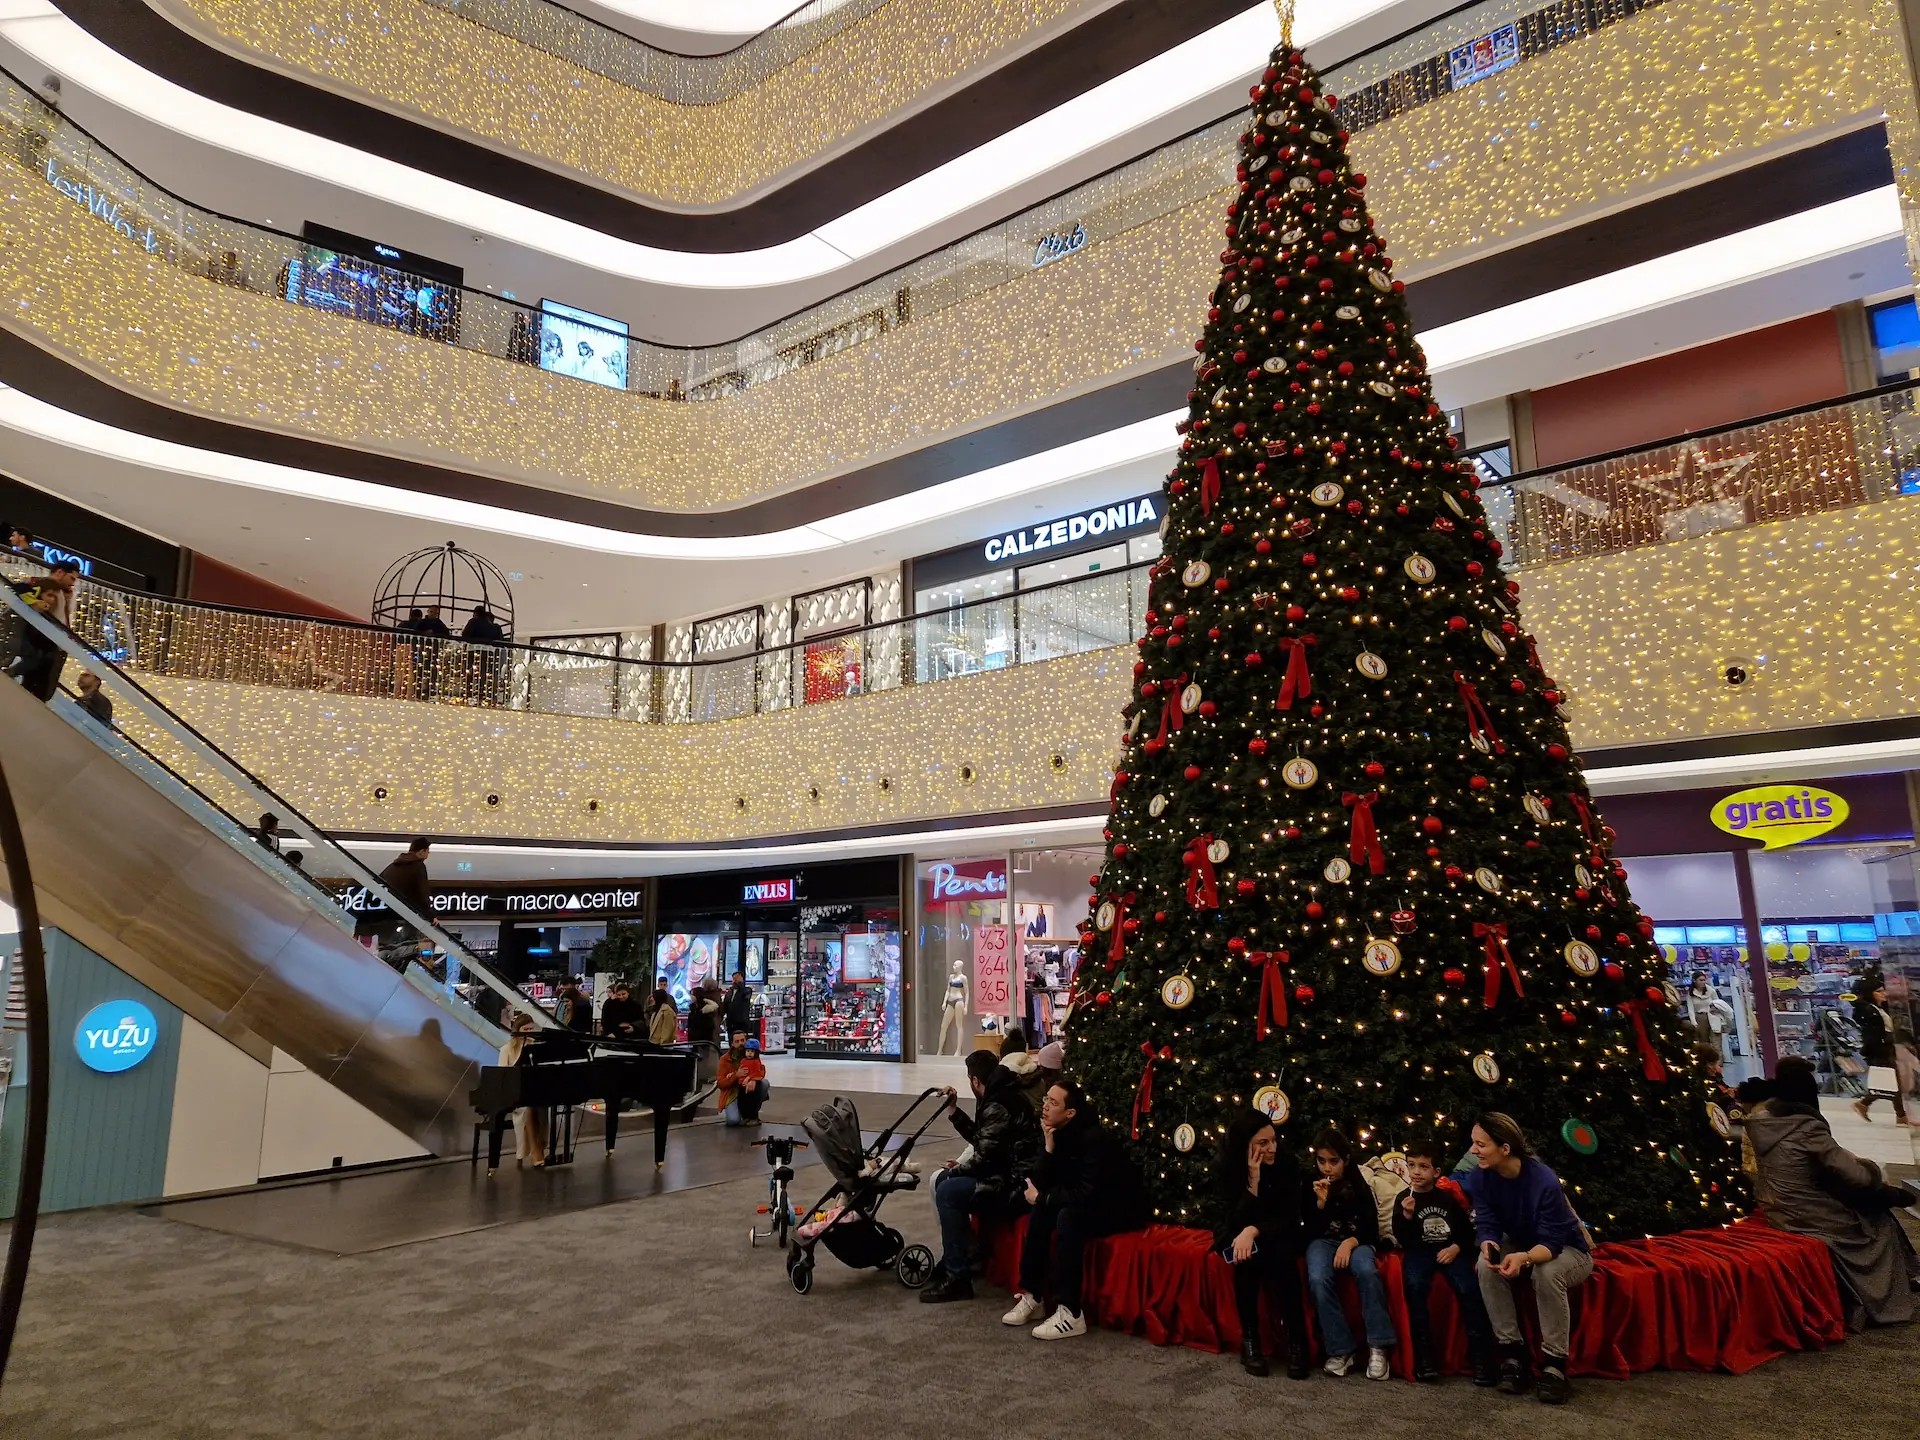 Dans le centre commercial : la pianiste est sur la gauche, le sapin illuminé est sur la droite. Des visiteurs sont assis au pied du sapin.